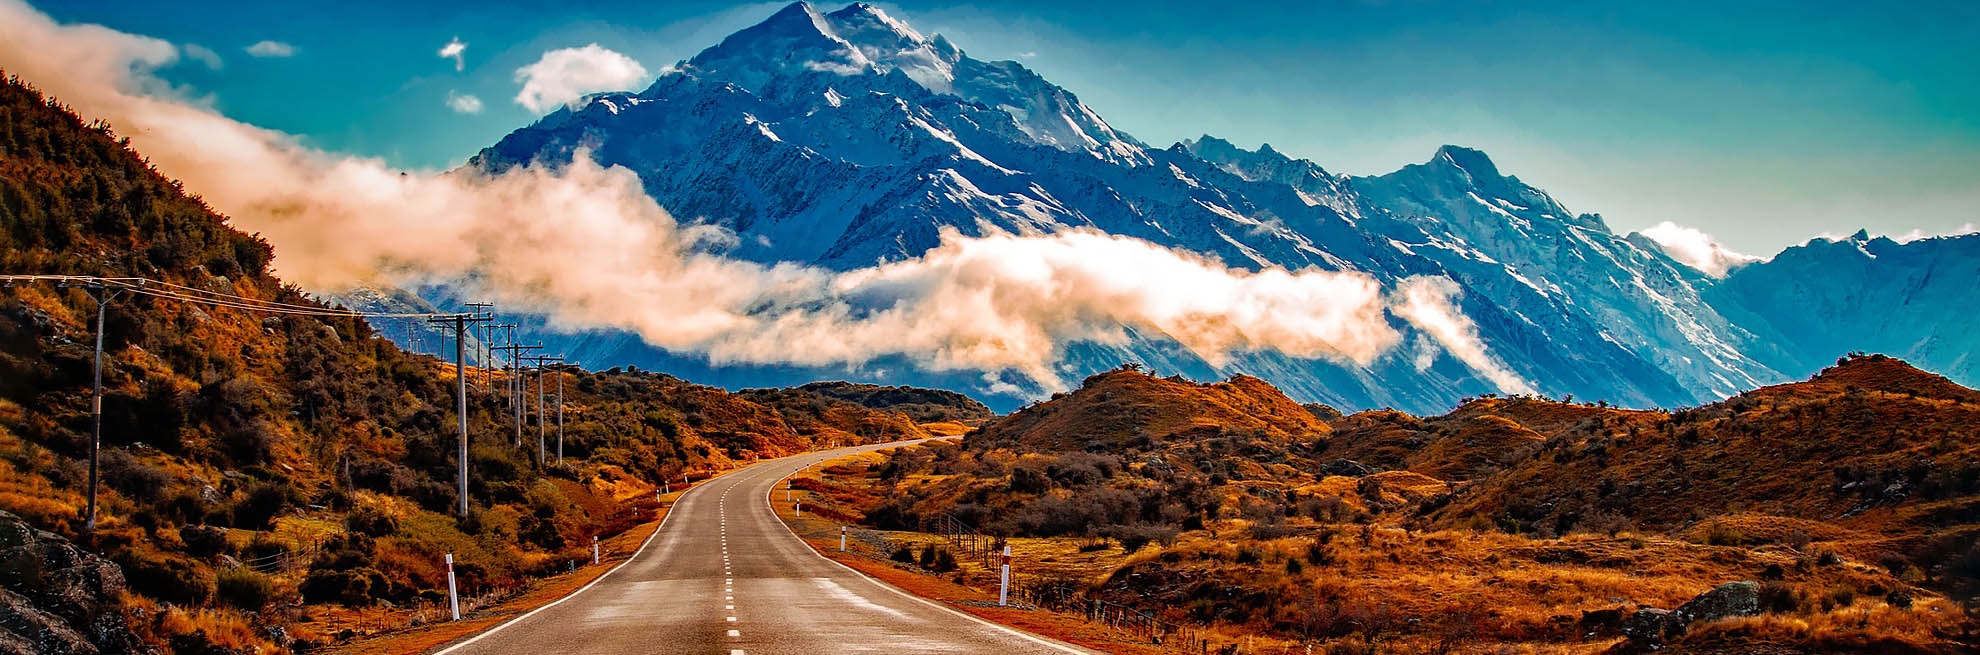 8 conseils de bon sens pour votre roadtrip en camping-car en Nouvelle-Zélande
